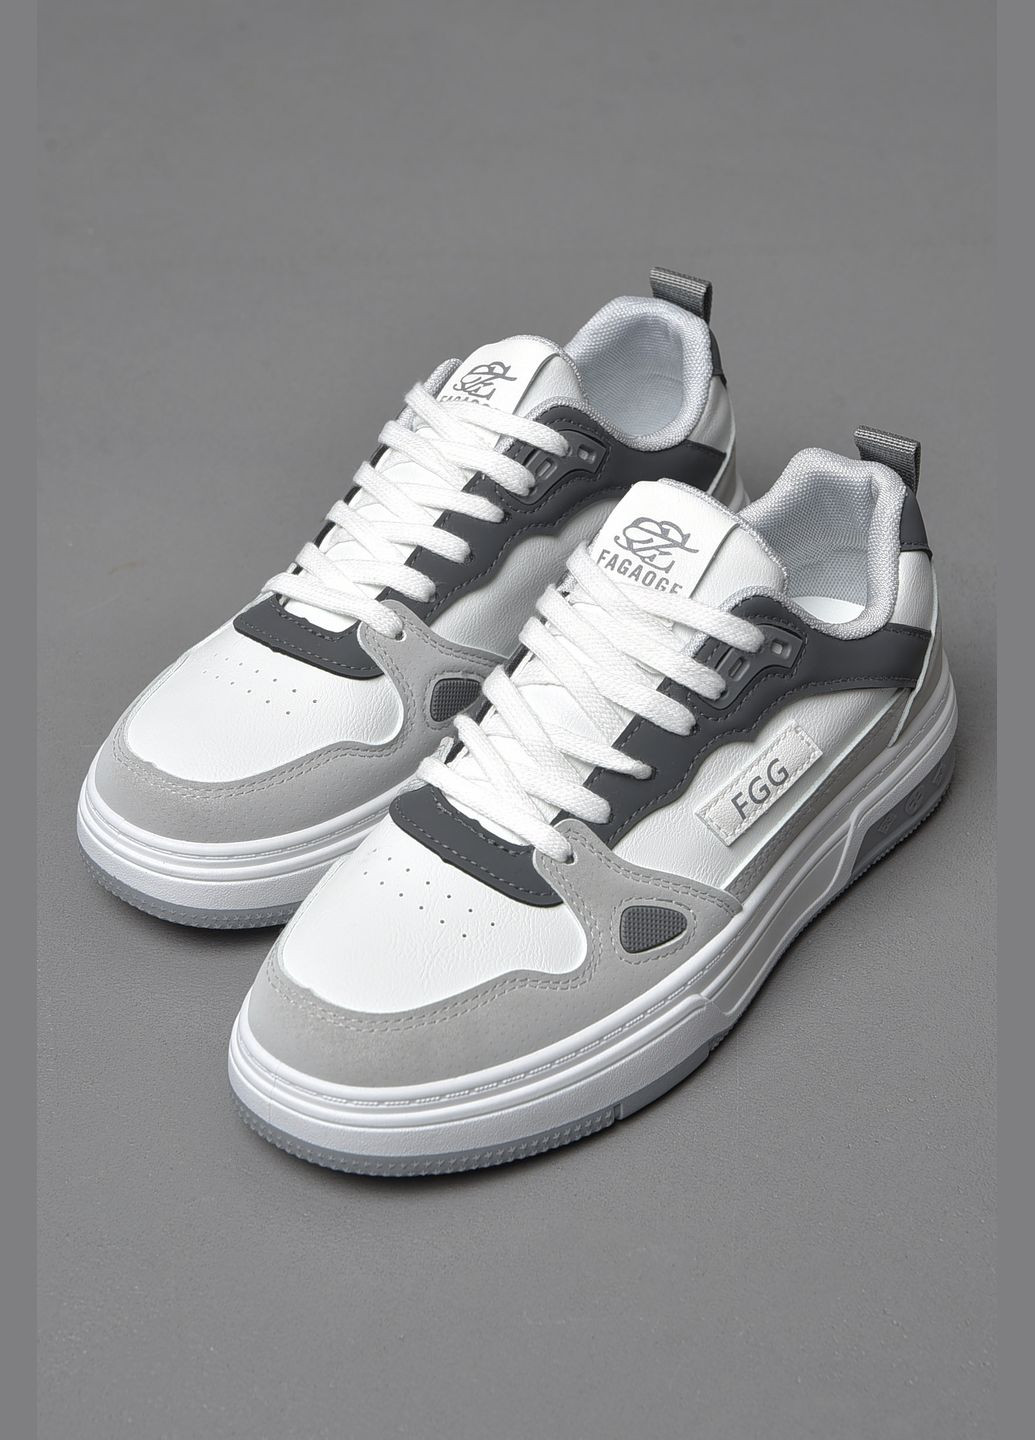 Цветные демисезонные кроссовки мужские бело-серого цвета на шнуровке Let's Shop